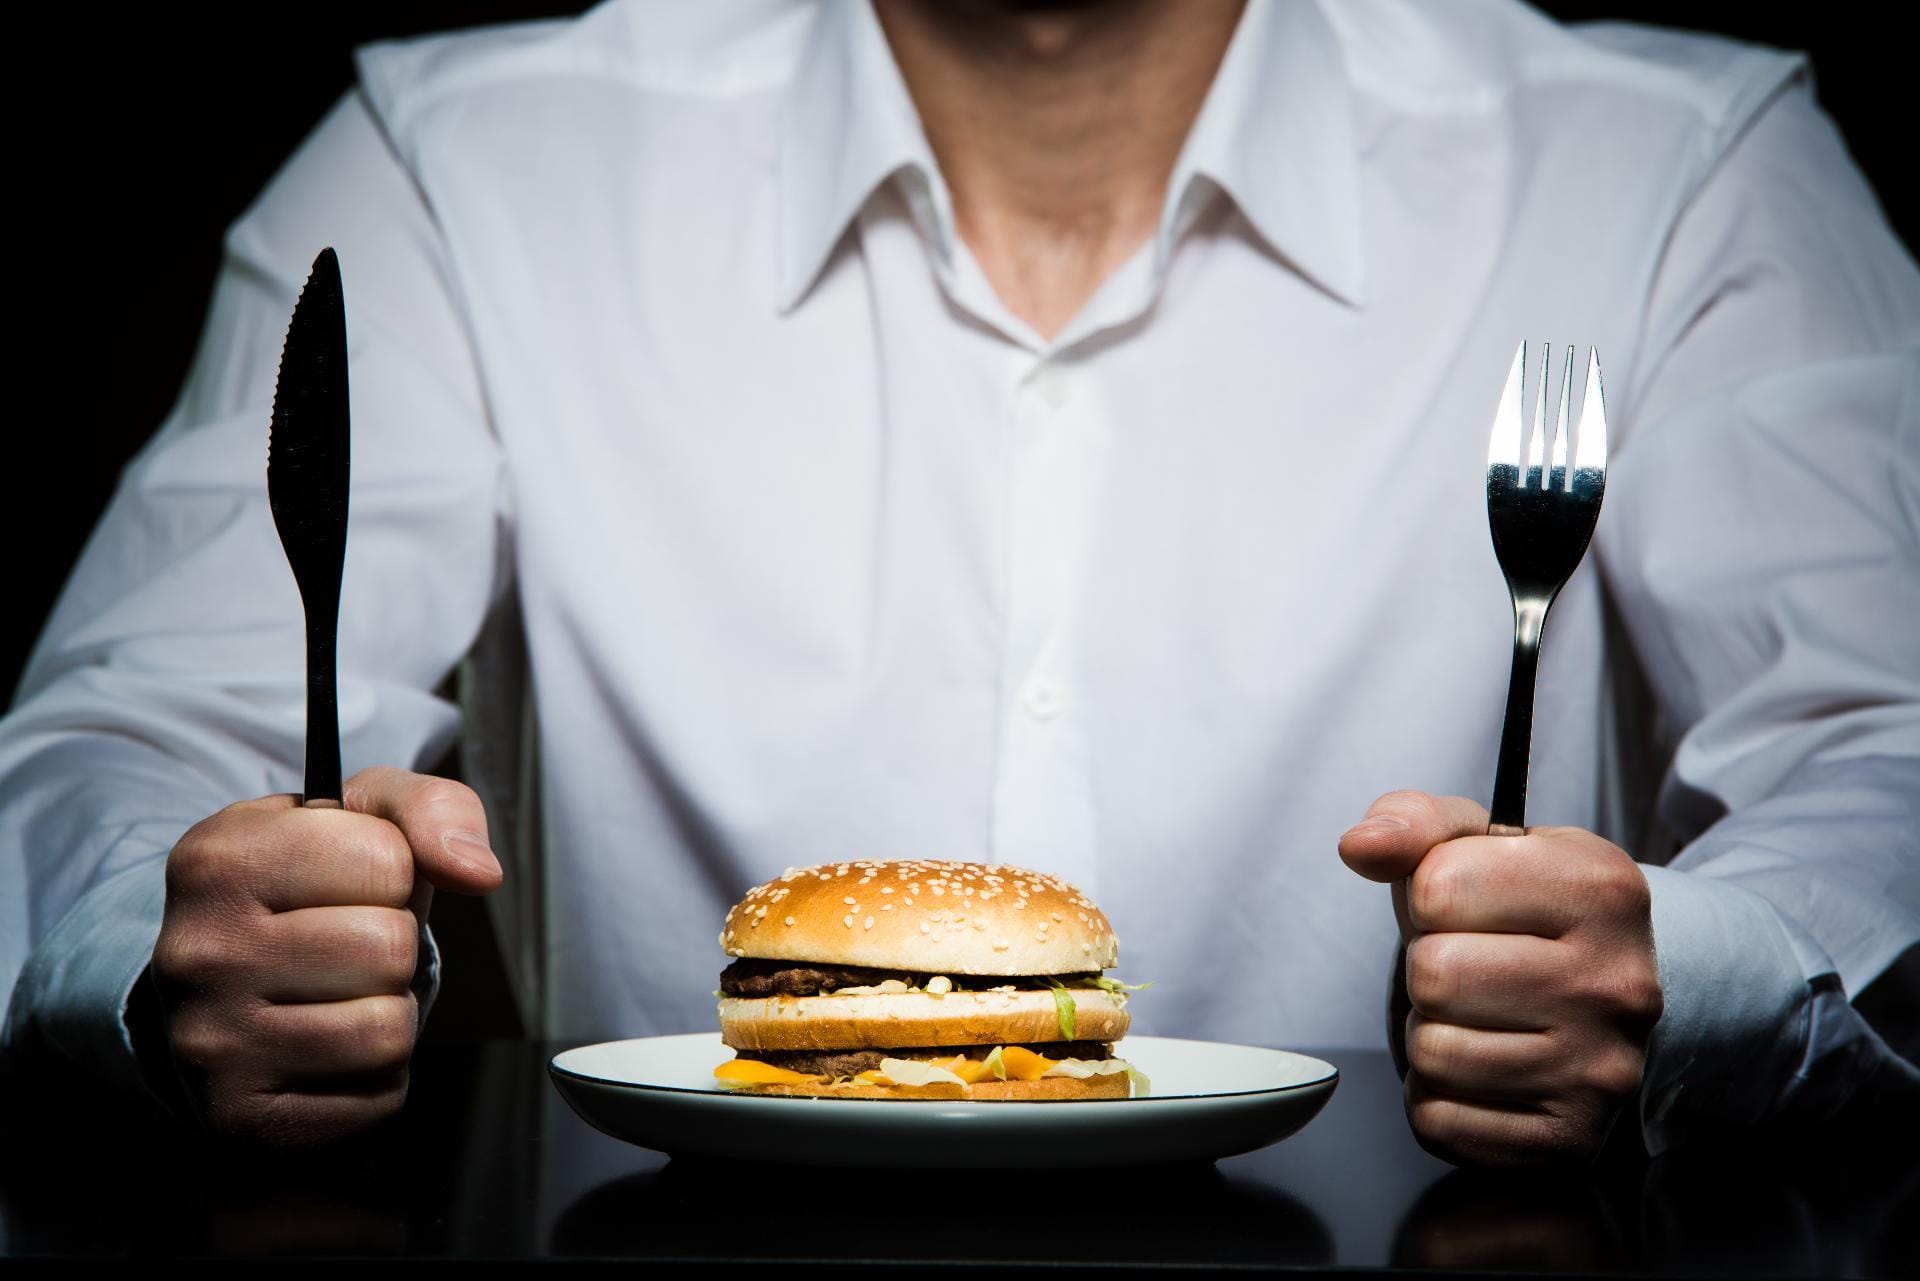 Das geht gar nicht: Hamburger werden aus der Hand gegessen. Egal, in welchem Restaurant man ihn bestellt.